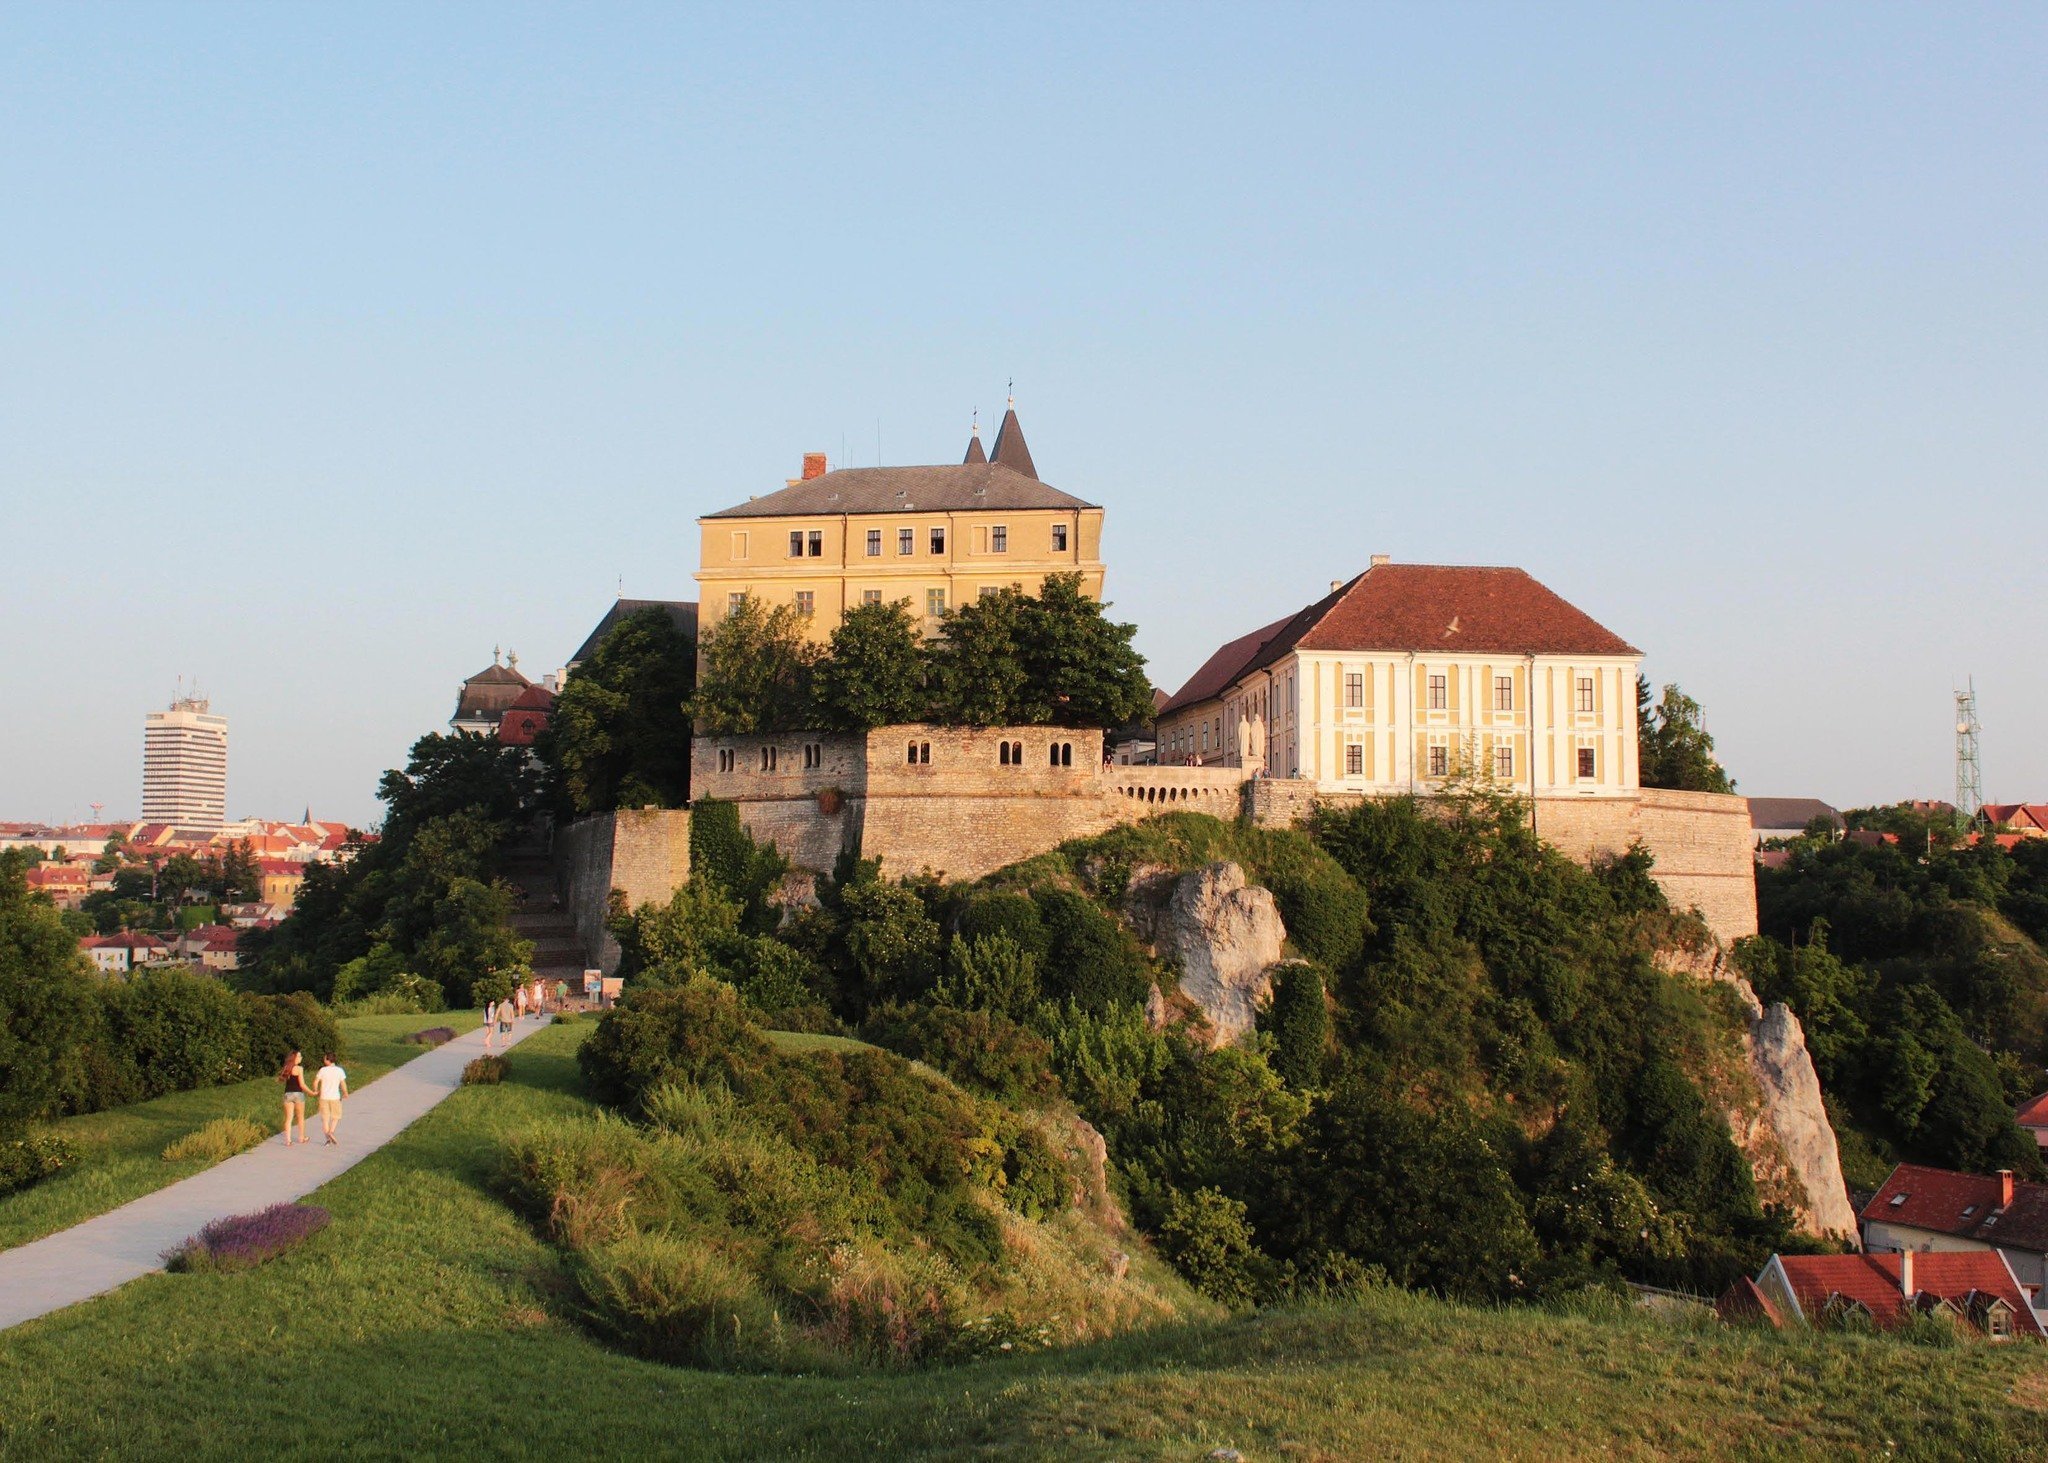 Veszprém city castle